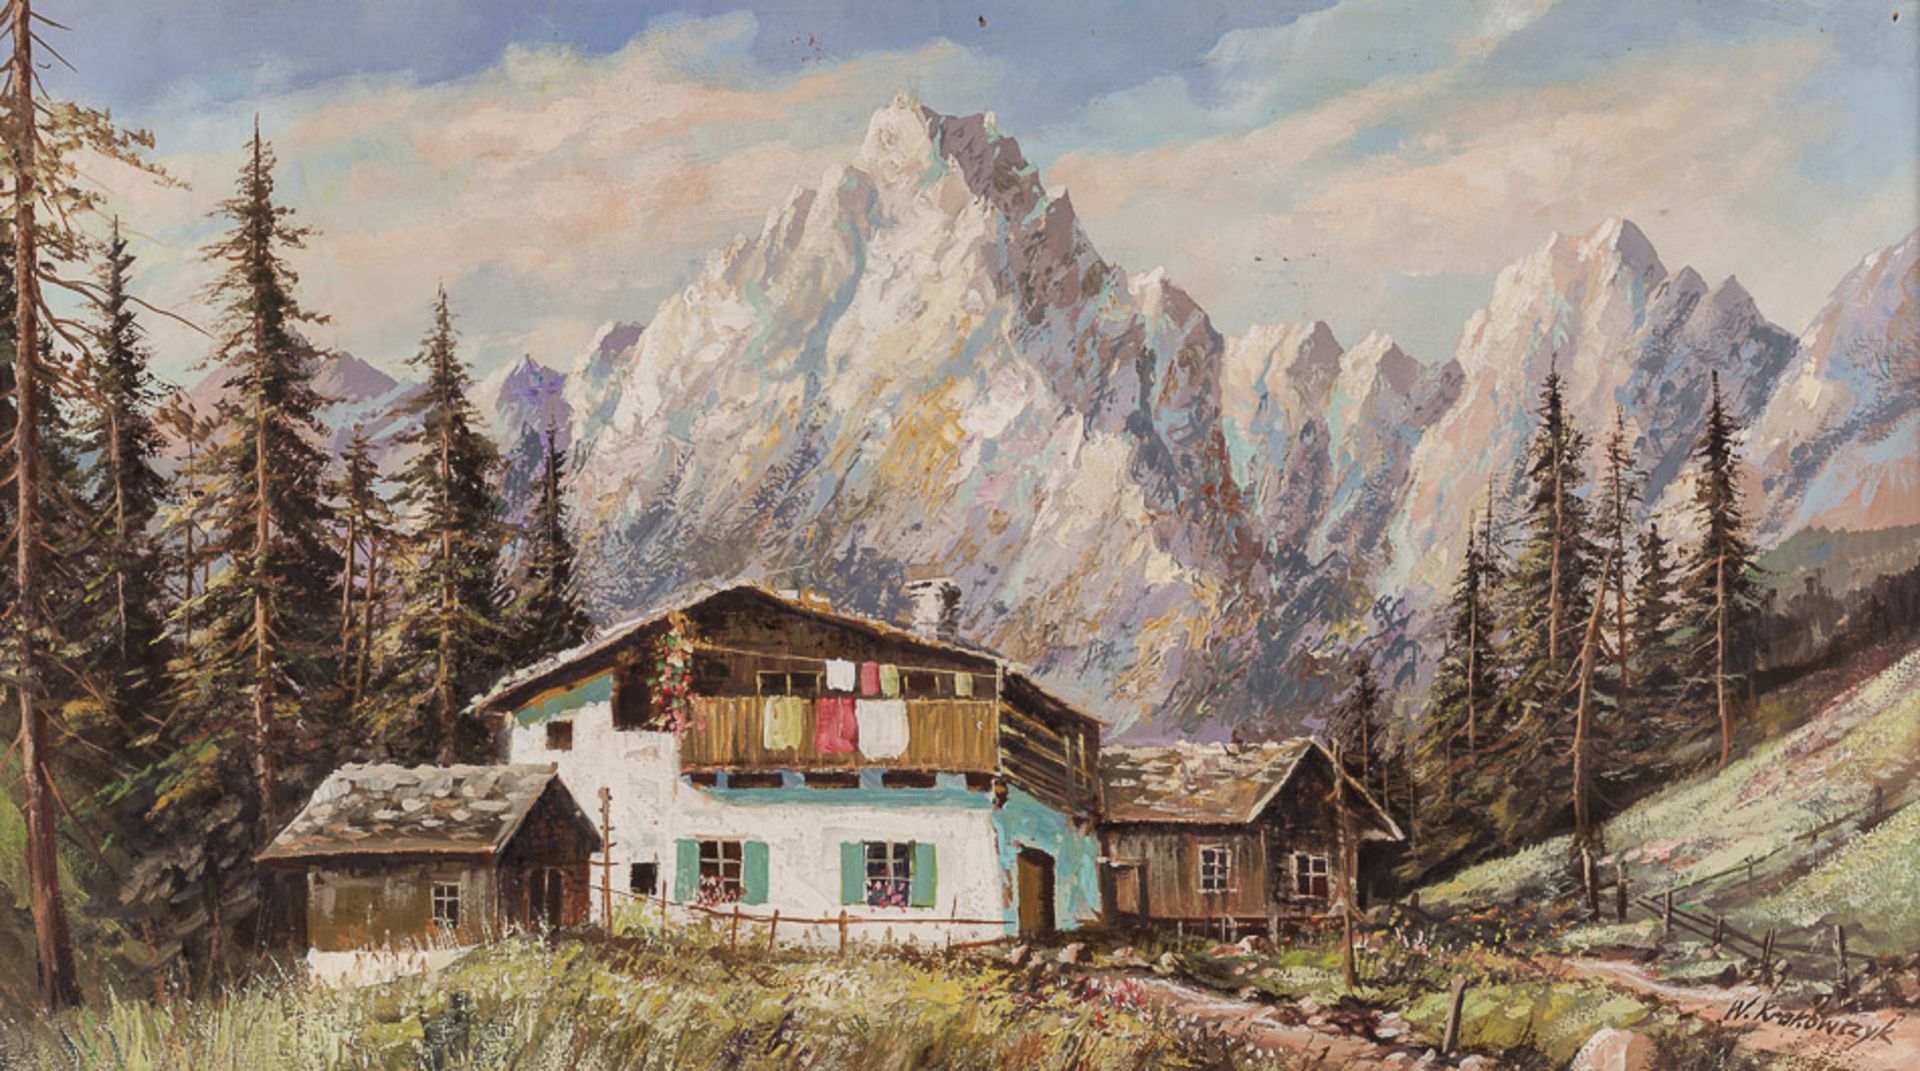 W. Krakowczyk 20. Jhd."Gebirgslandschaft"
Gemälde Öl/Malkarton, 
38,5 cm x 68,5 cm, gerahmt,